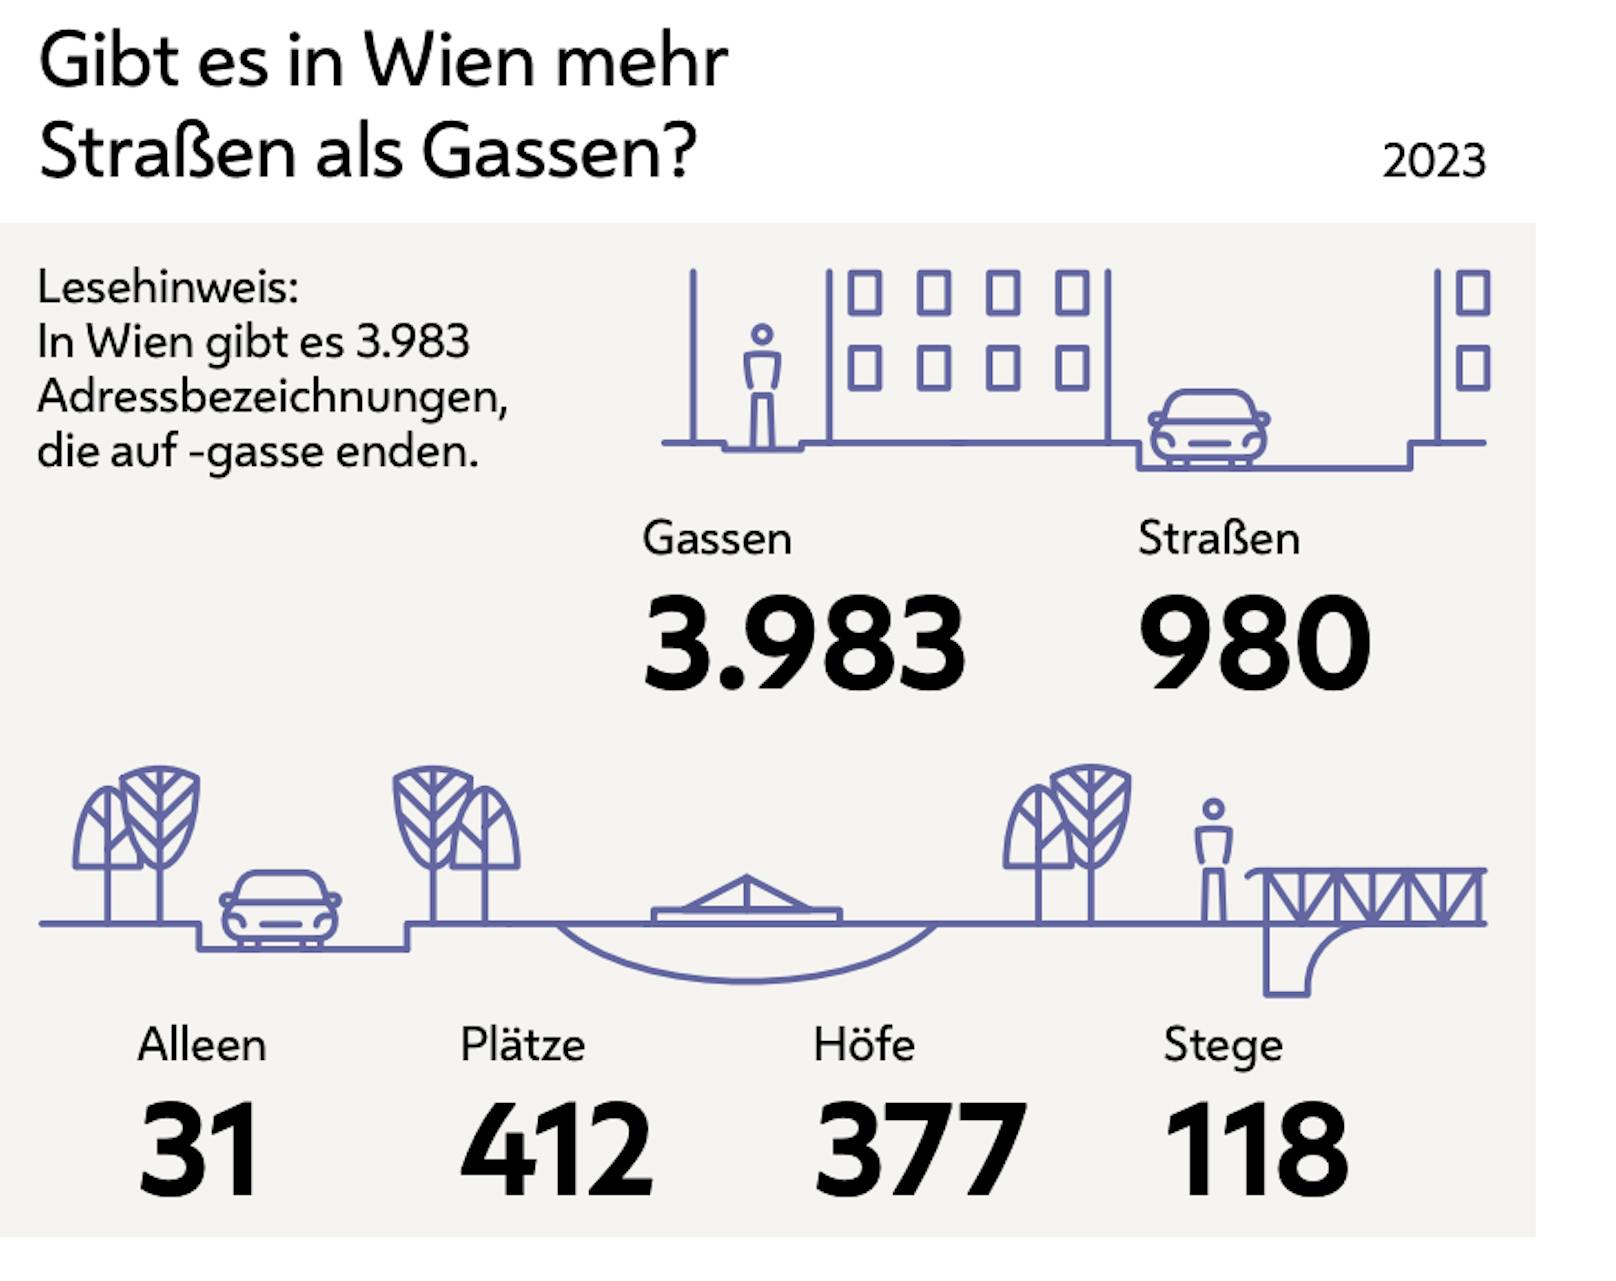 Wien hat mehr Gassen als Straßen